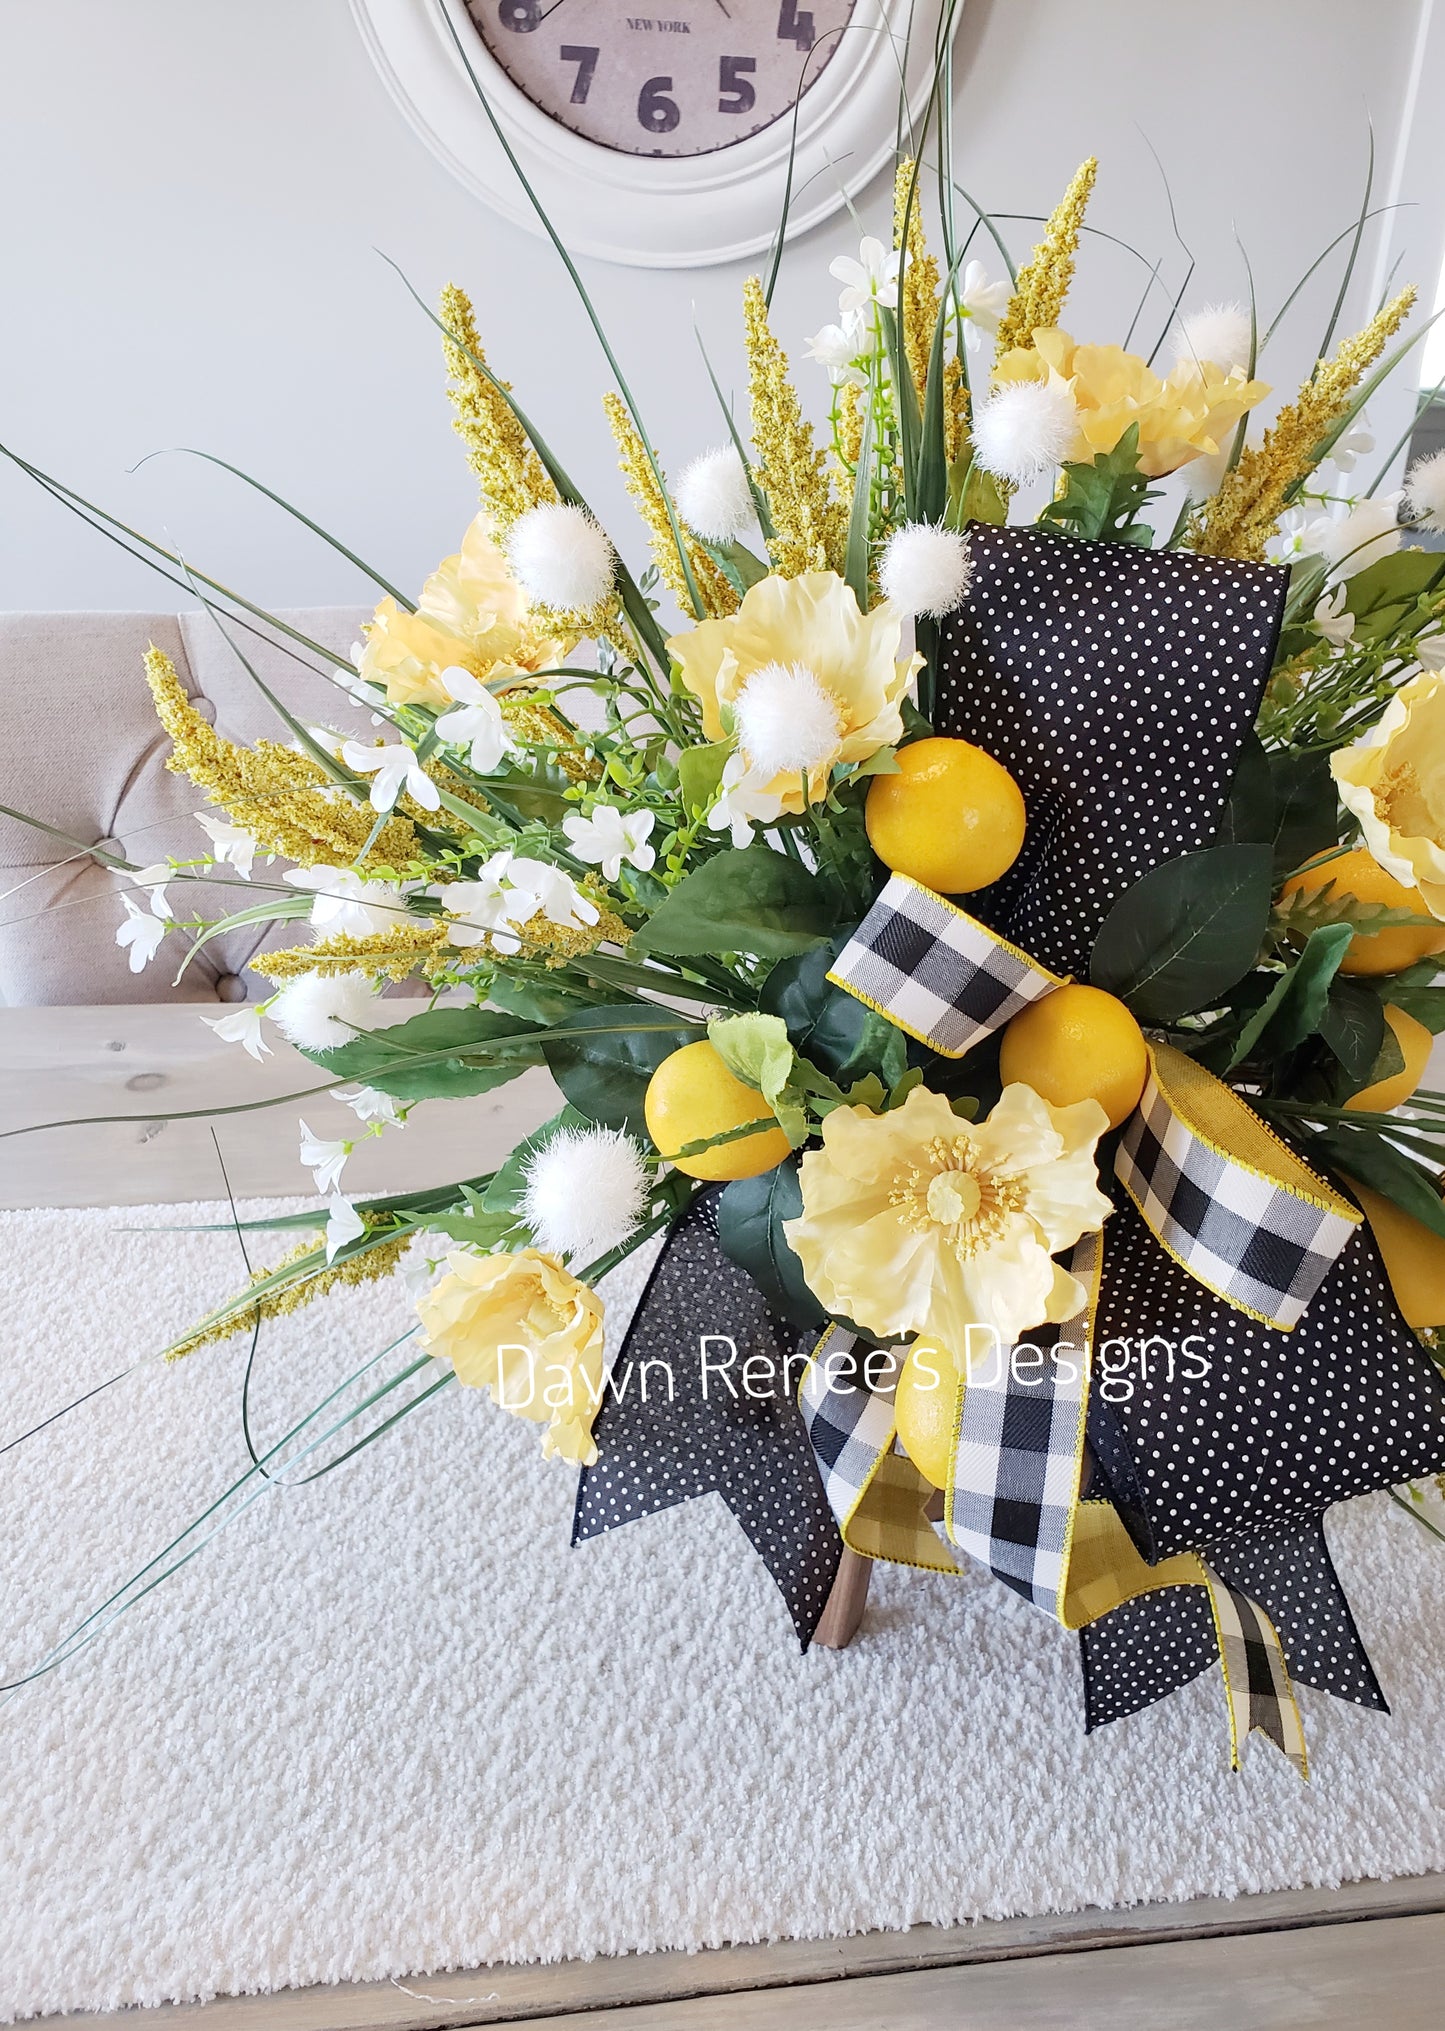 Lemon Floral Centerpiece Arrangement